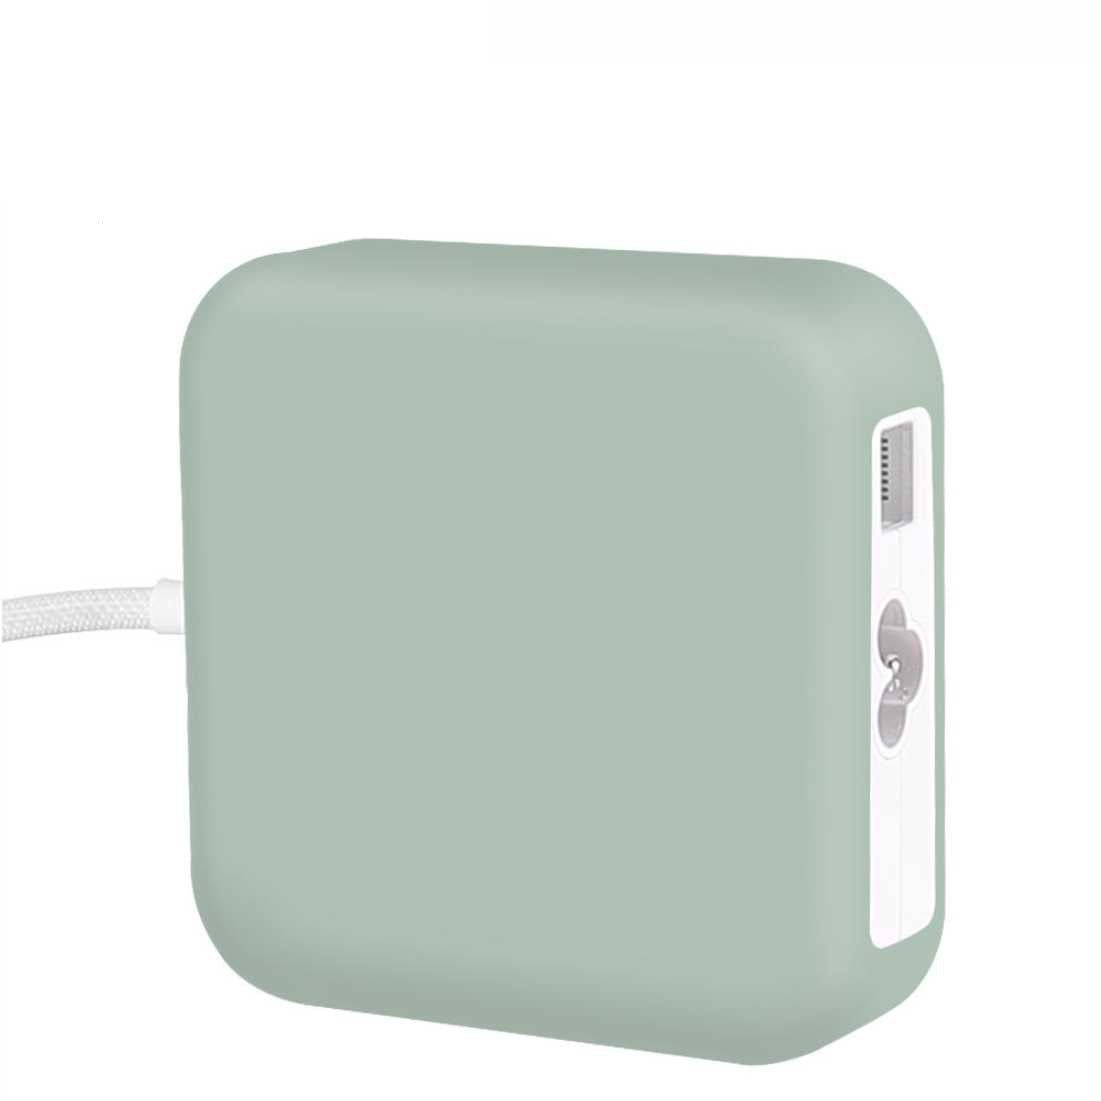 Silicon Cover of iMac 143w Adaptor